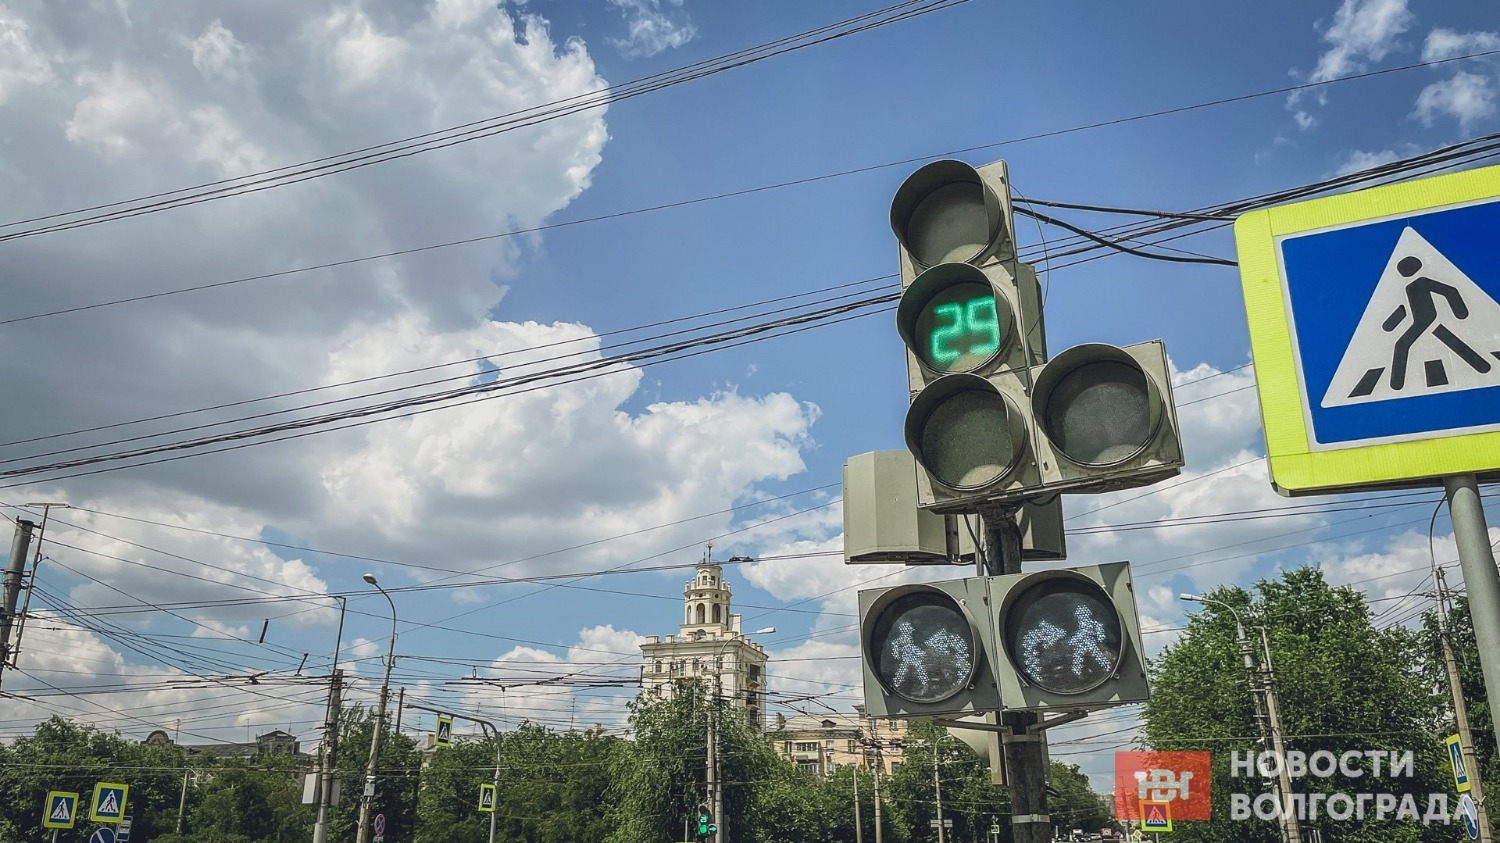 Длительность зелёного сигнала светофора увеличили с 20 до 29 секунд